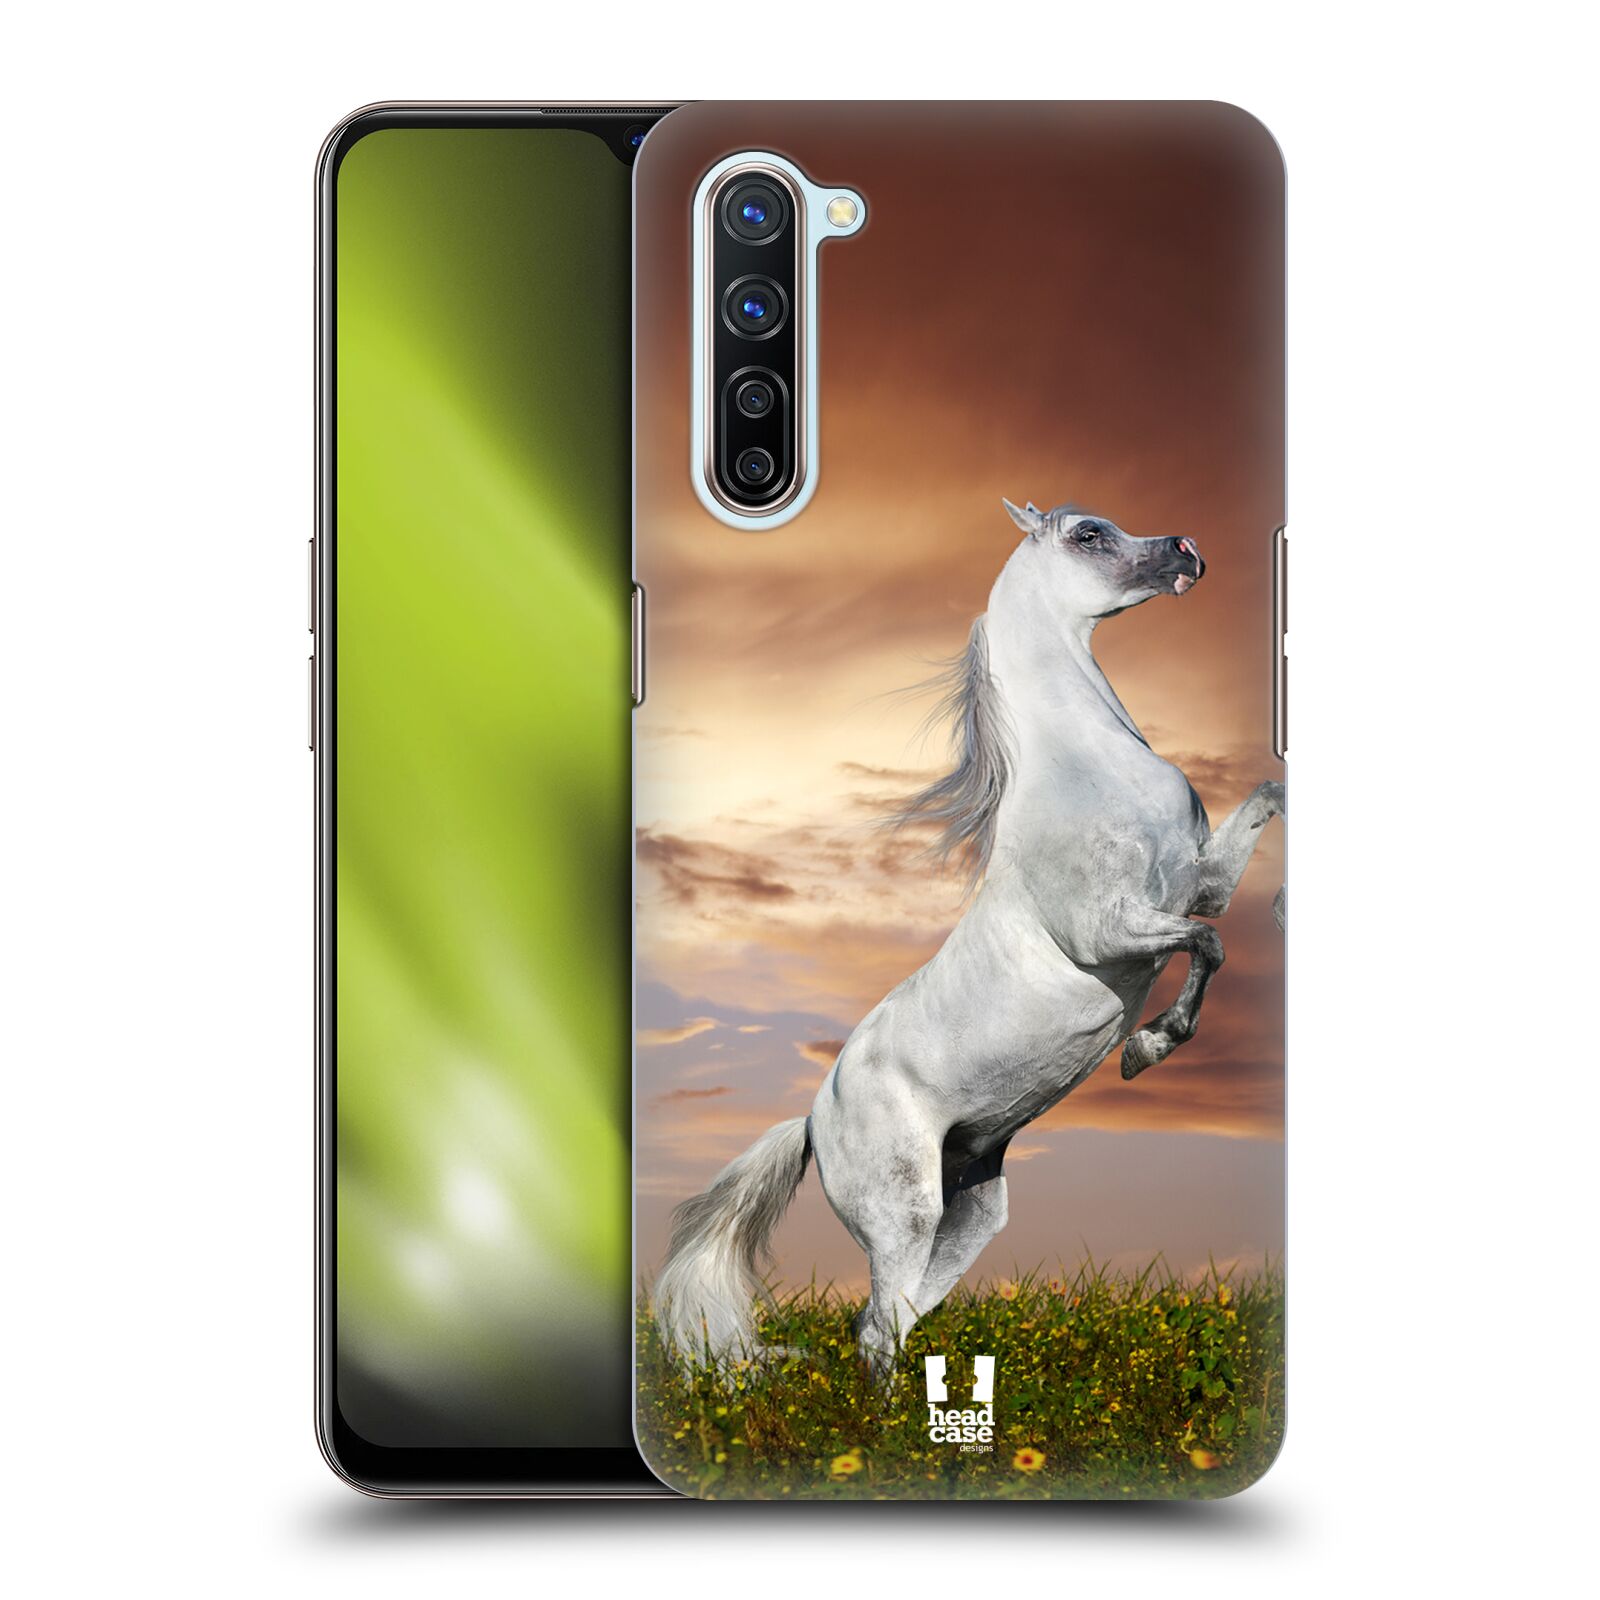 Zadní obal pro mobil Oppo Find X2 LITE - HEAD CASE - Svět zvířat divoký kůň